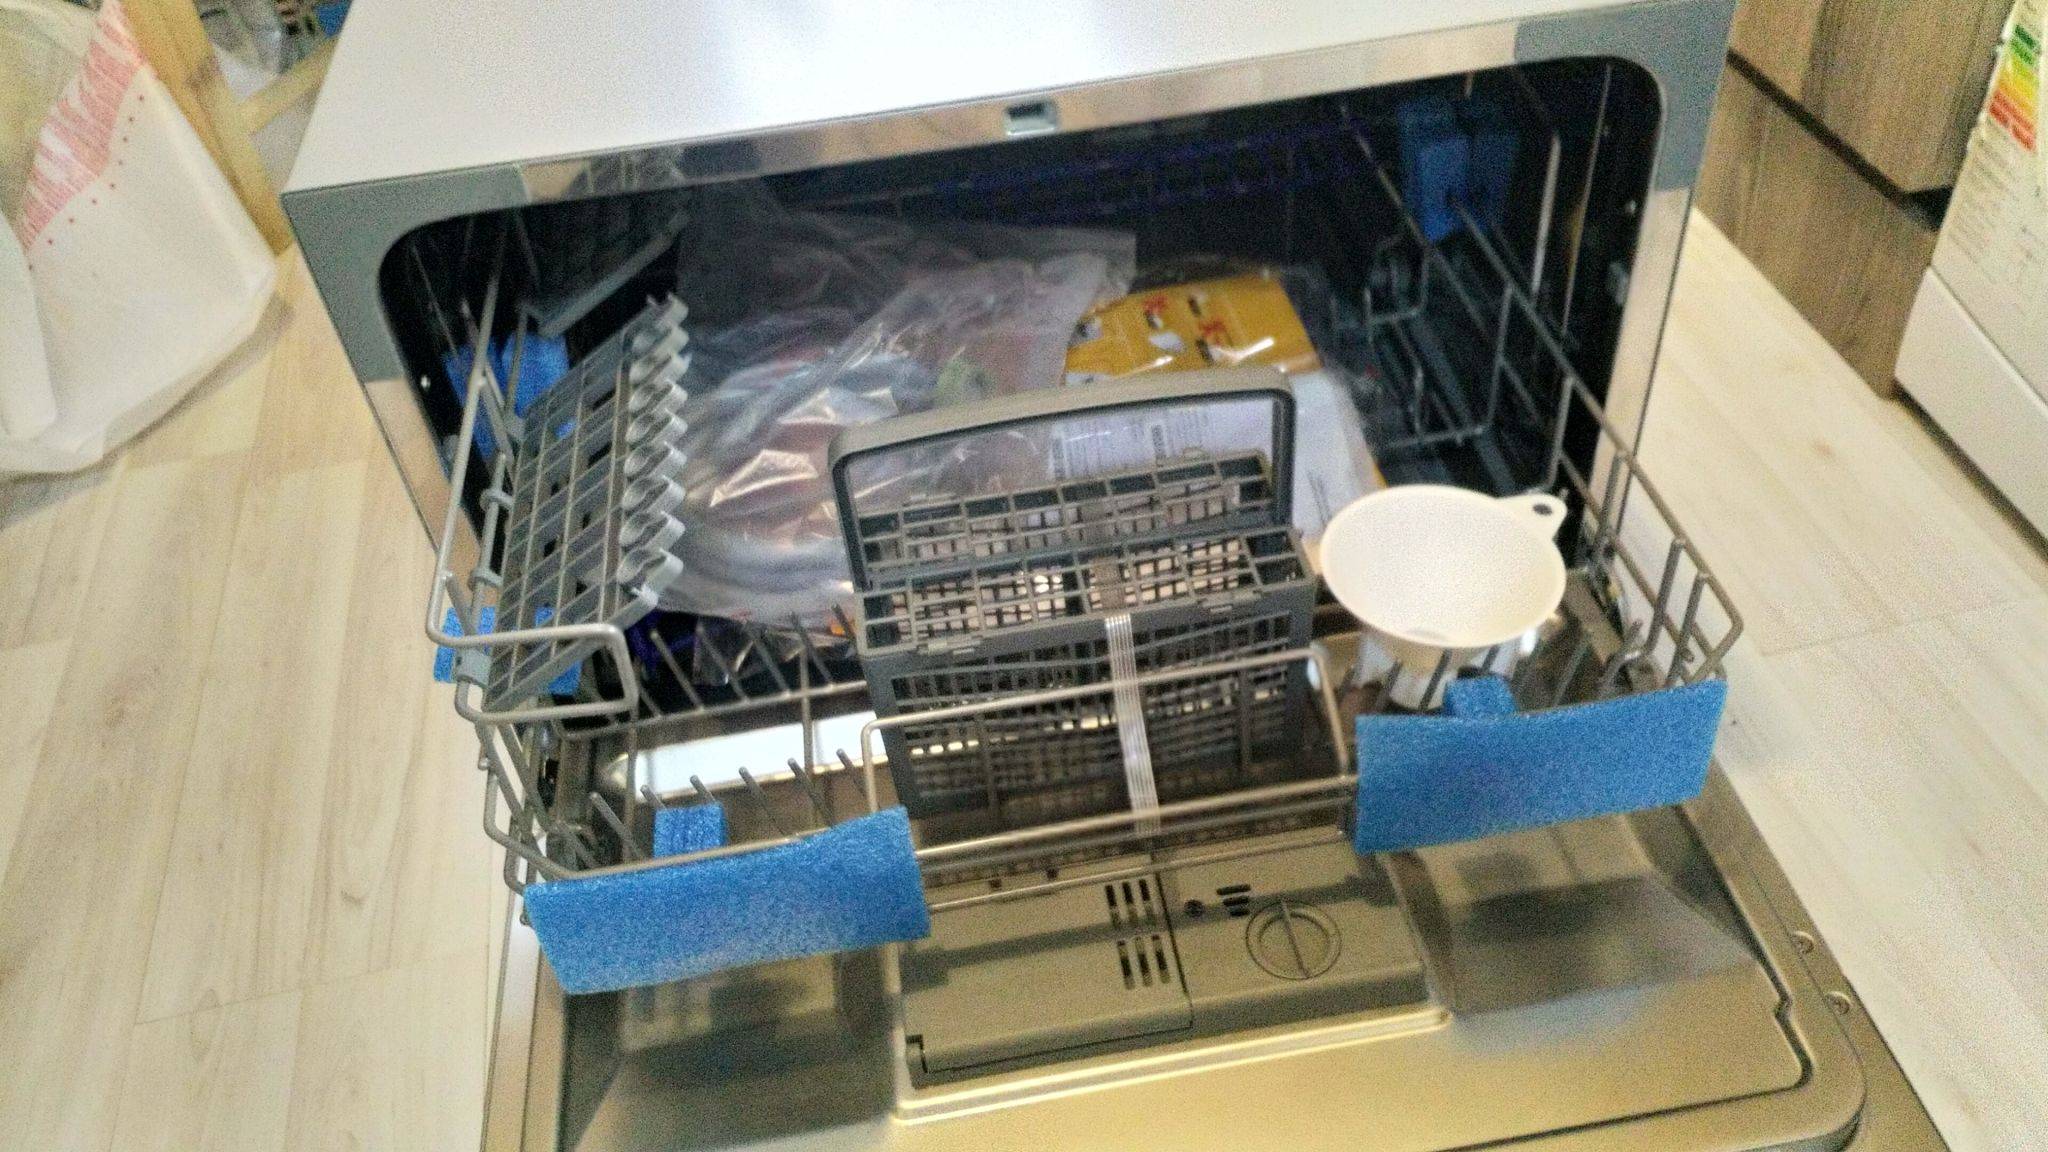 Первый запуск посудомоечной машины (включение посудомойки первый раз, пмм) — как запустить, бош, электролюкс, хотпоинт аристон, мидеа, средство, использование